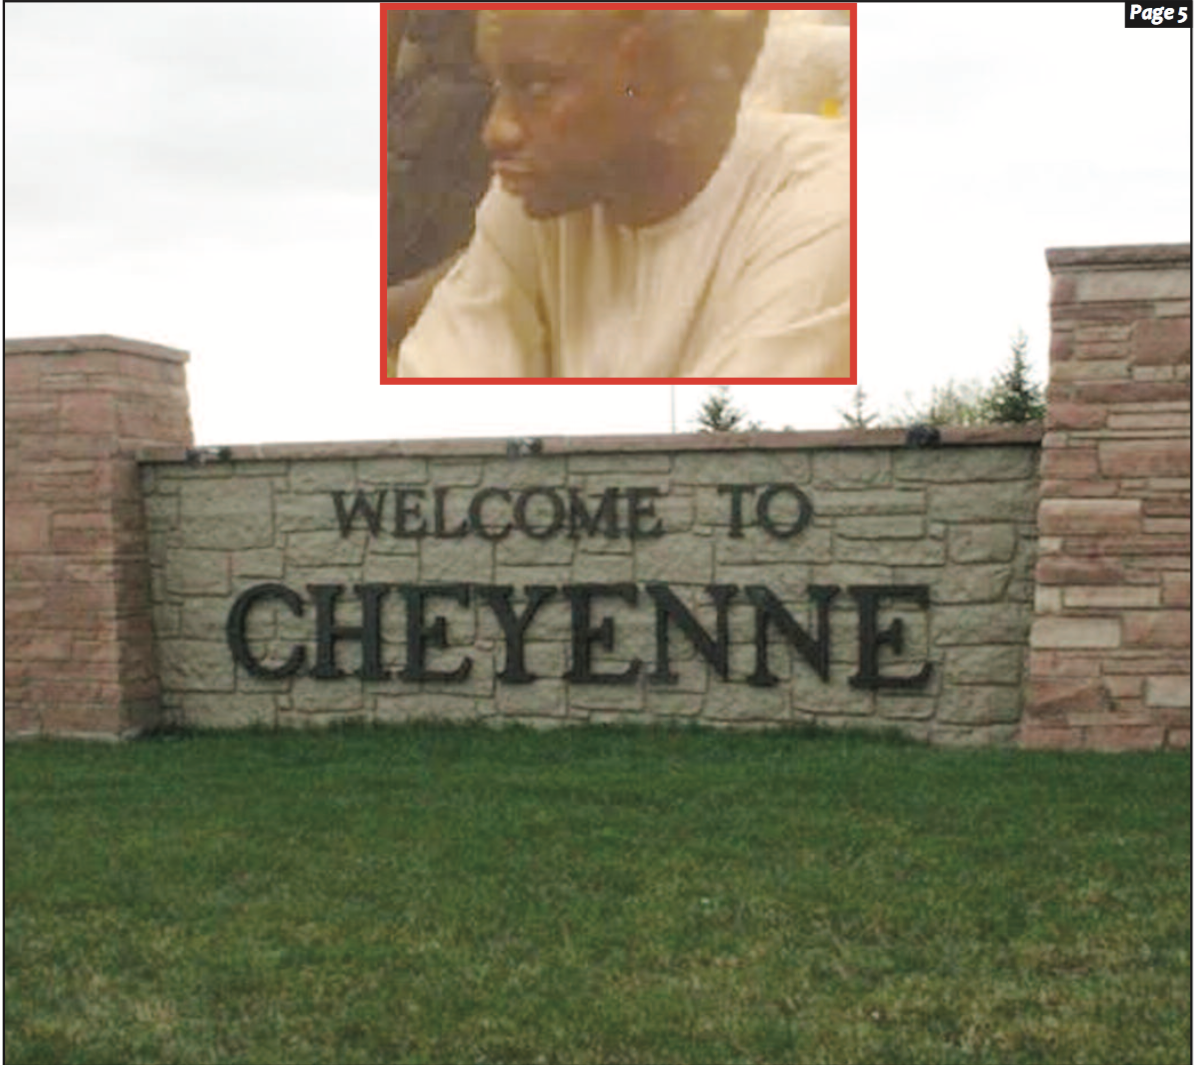 APRES LE PANAMA, LES ÎLES VIERGES ET LE LUXEMBOURG : Pape Mamadou Pouye localisé à... Cheyenne